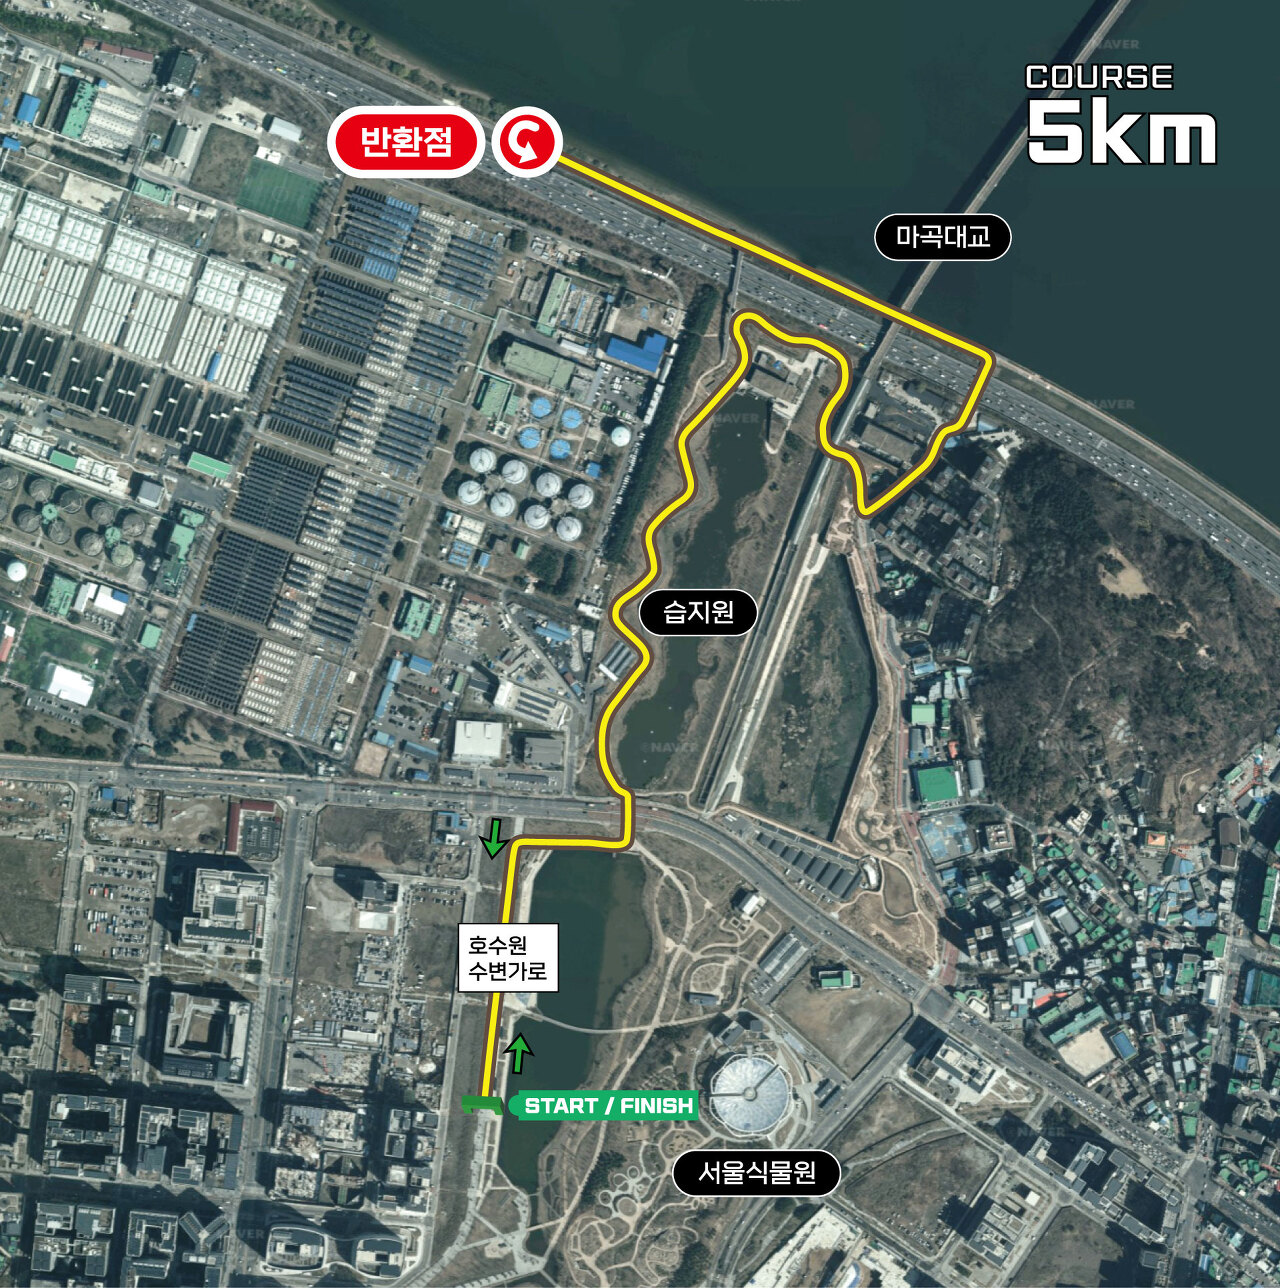 제21회 강서 허준 건강마라톤 대회 5km 코스맵